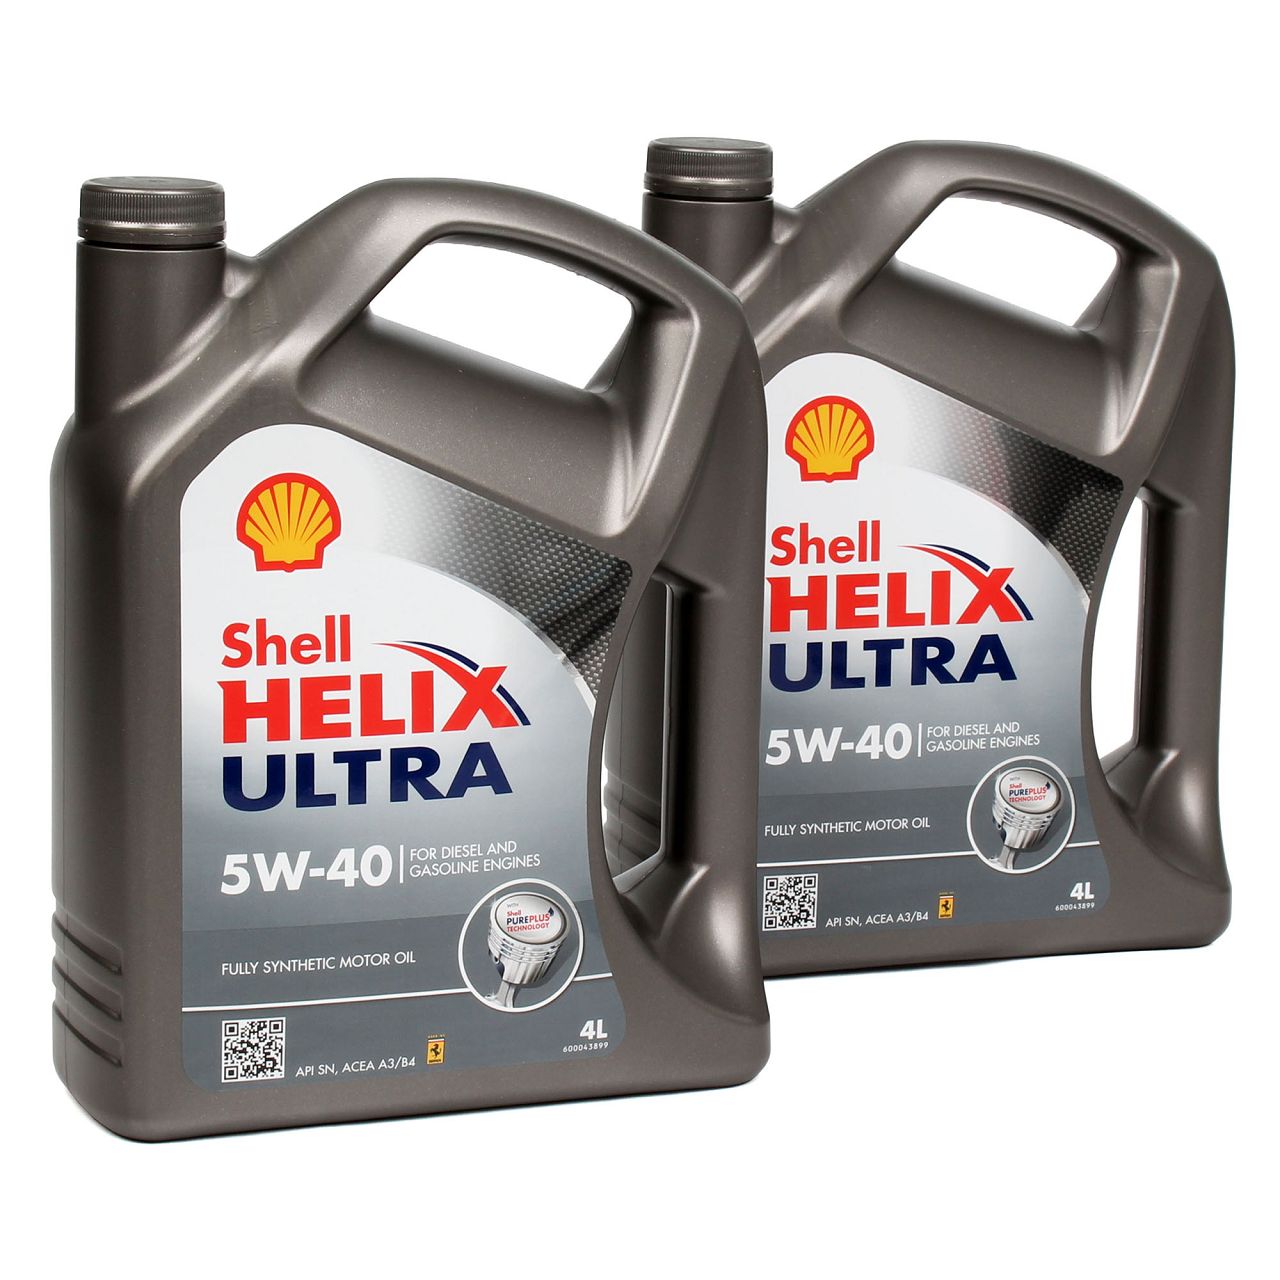 SHELL Motoröl Öl HELIX ULTRA 5W-40 5W40 MB 226/229.5 VW 502/505.00 - 8L 8 Liter